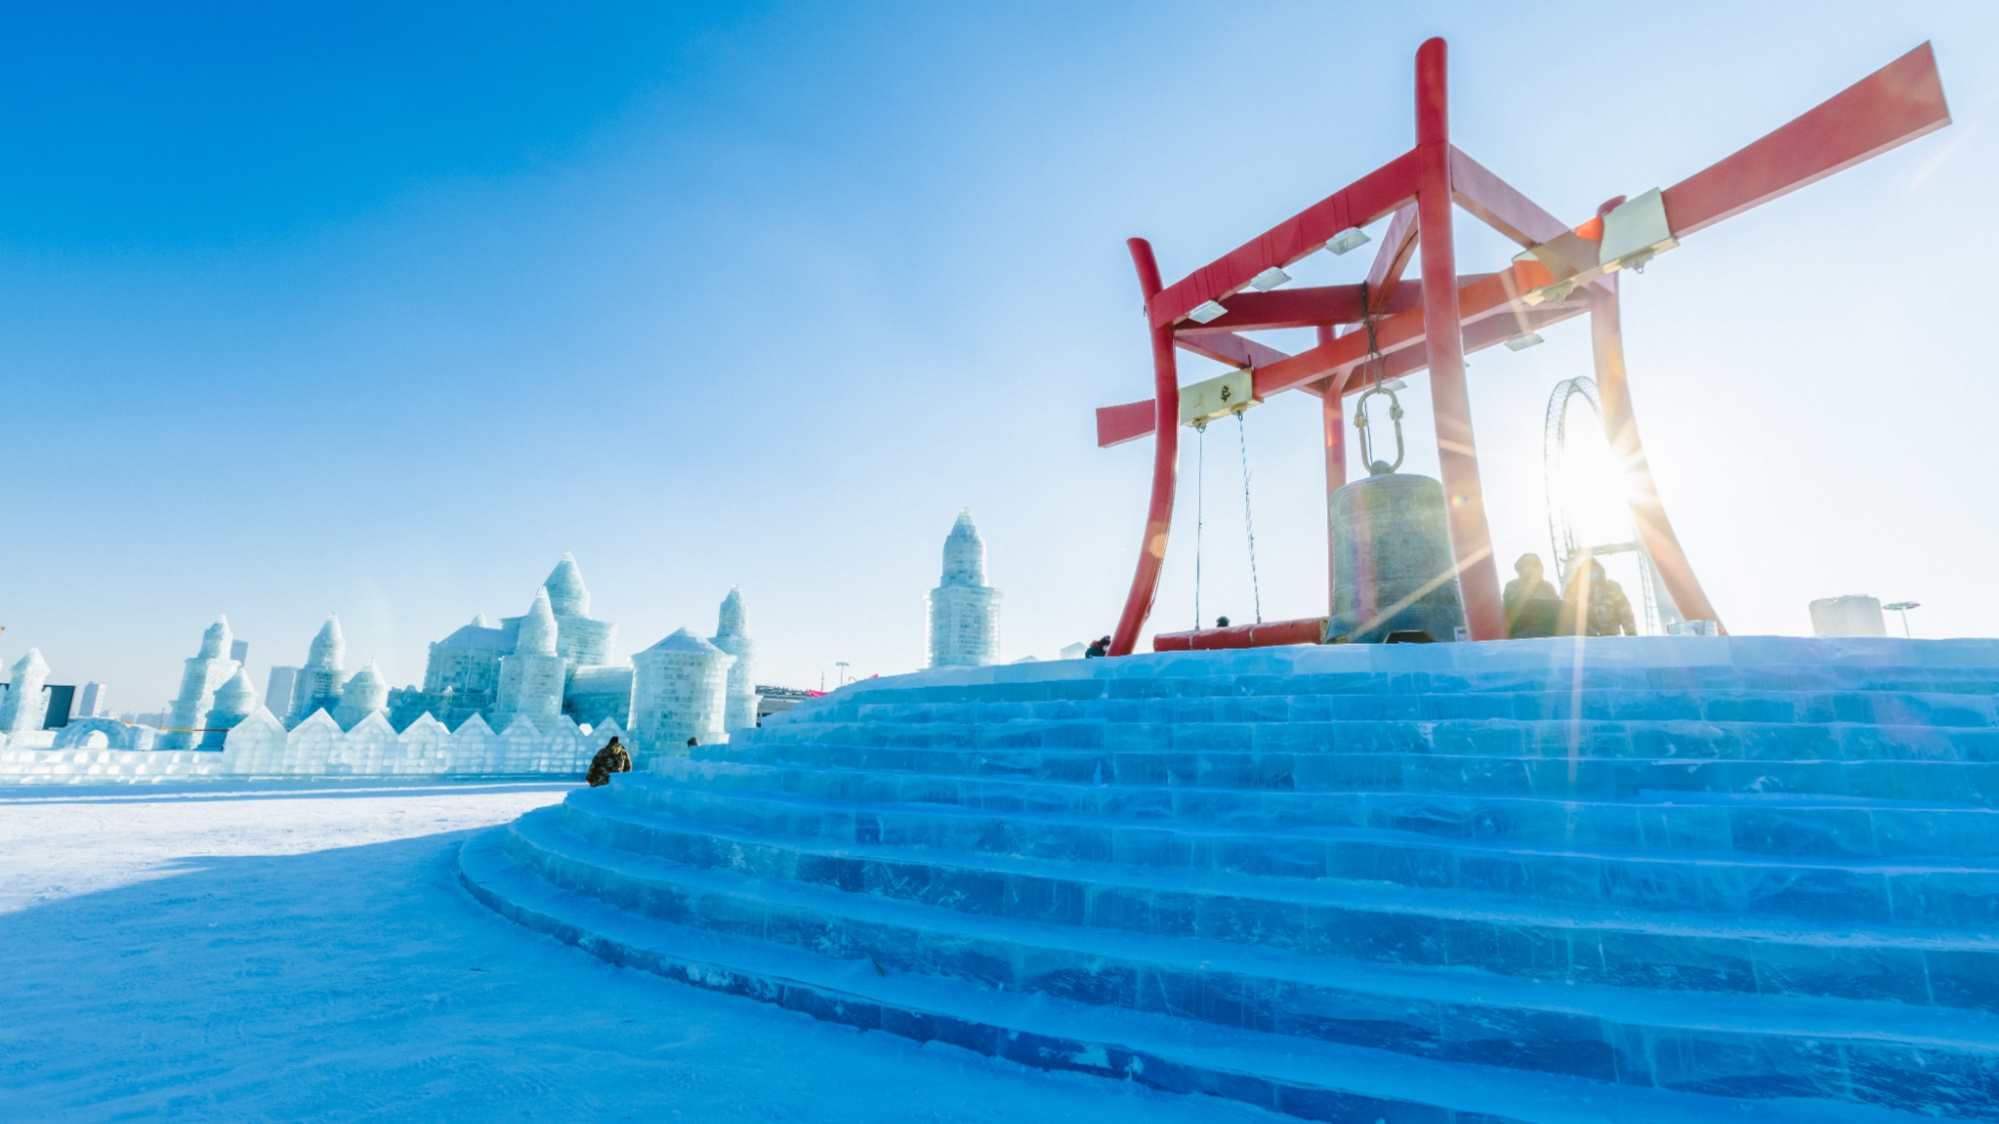 谁能发一下哈尔滨的图片，要漂亮的。最好是雪景_百度知道